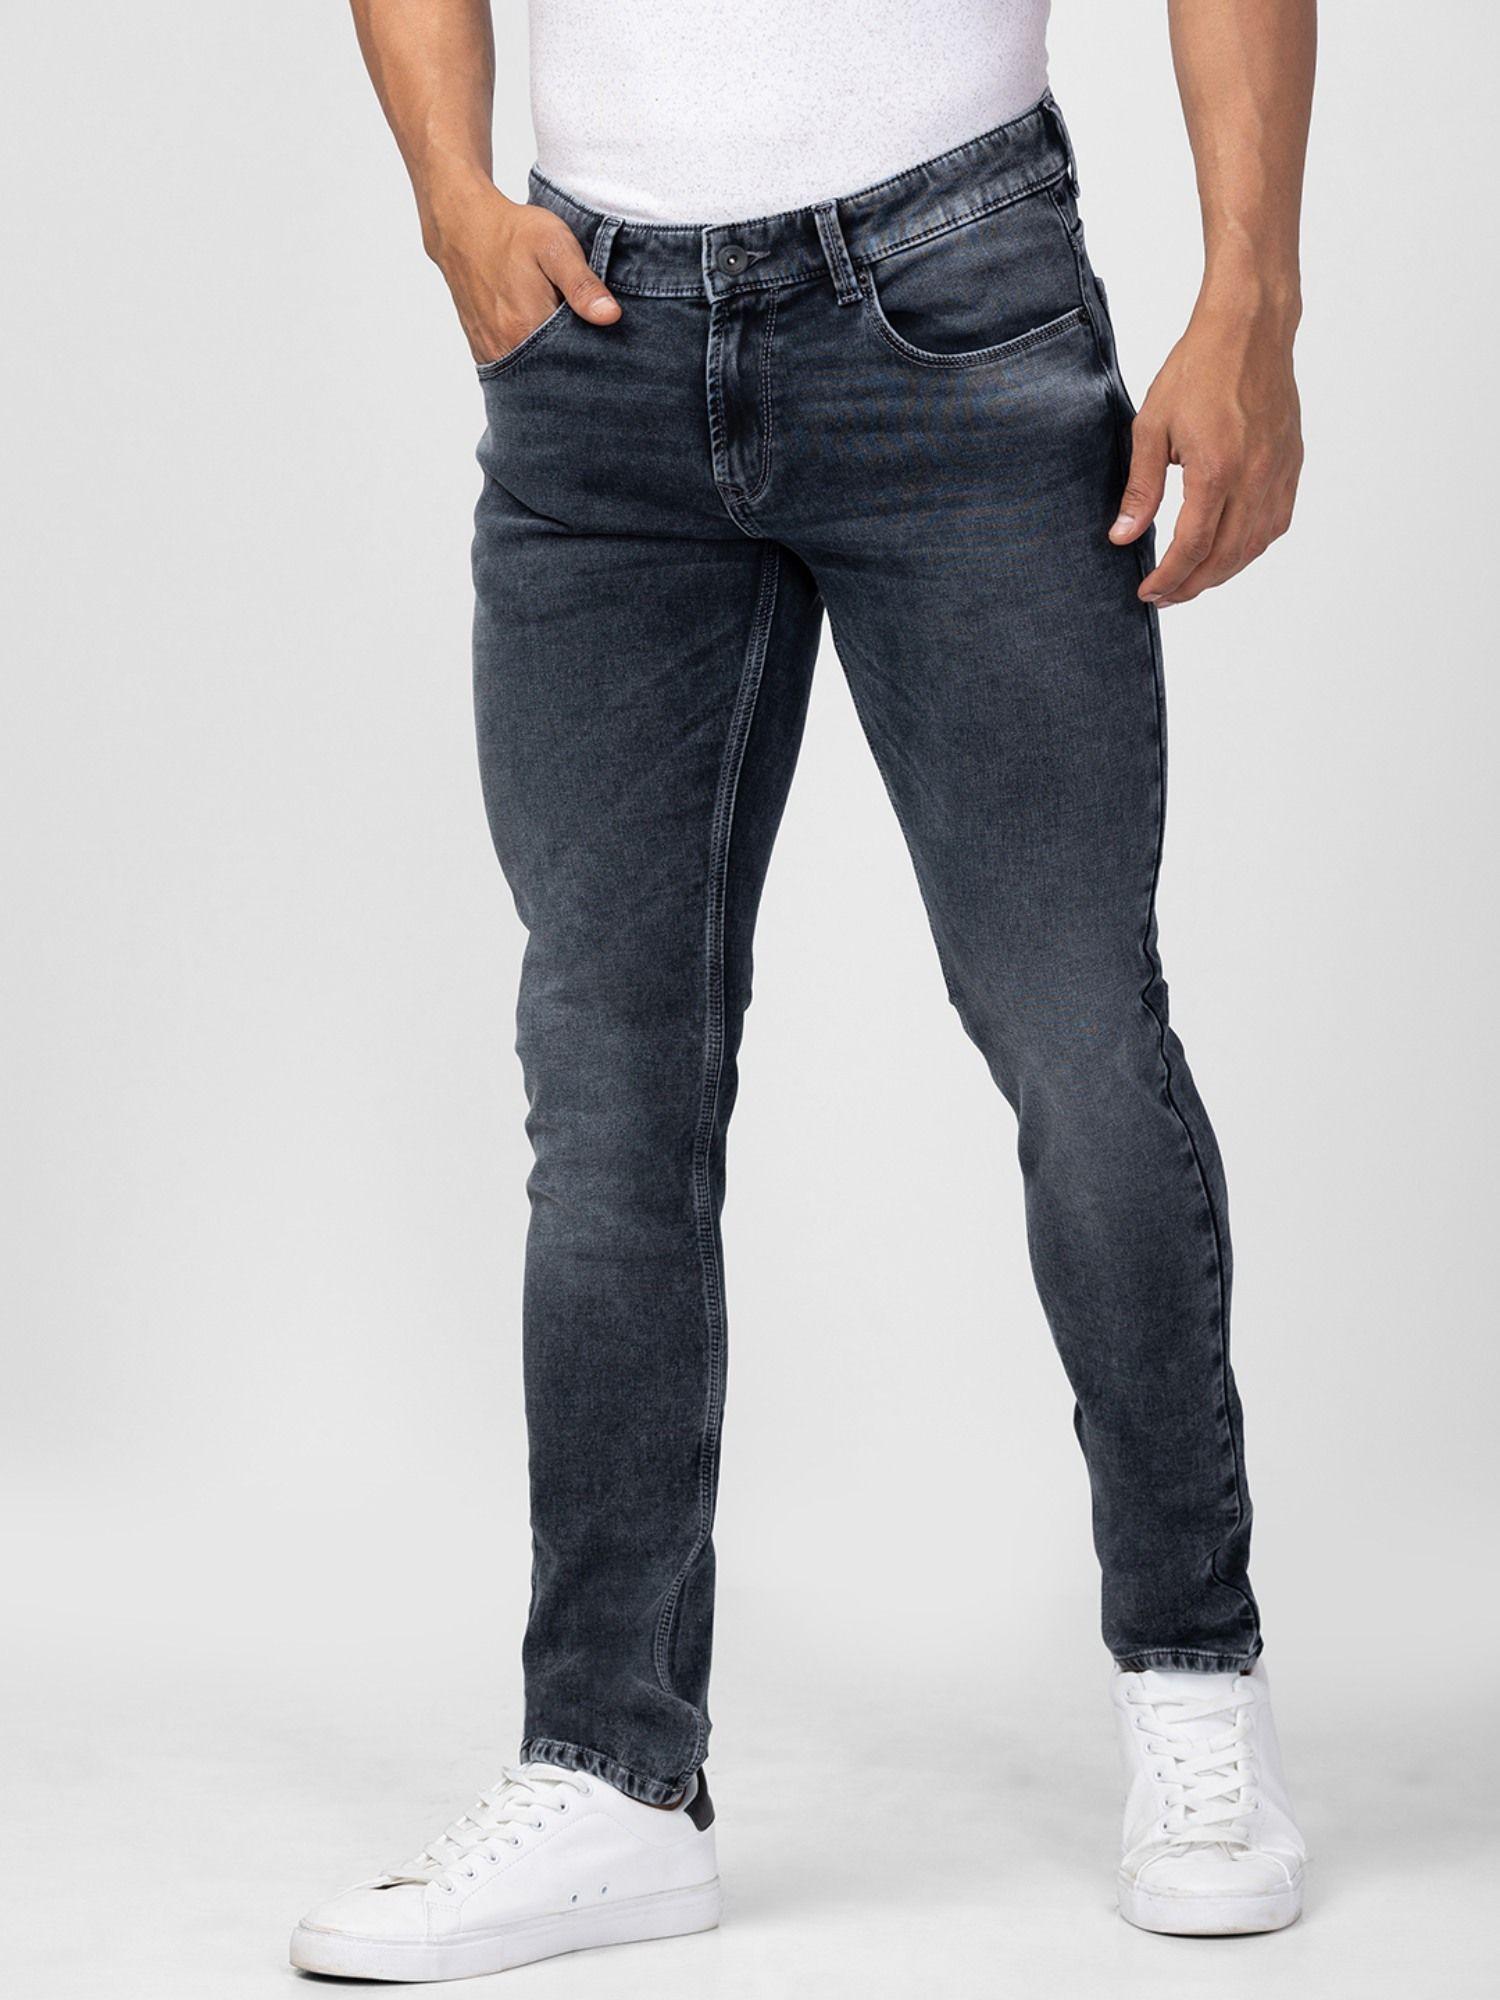 dark grey low rise slim fit jeans for men